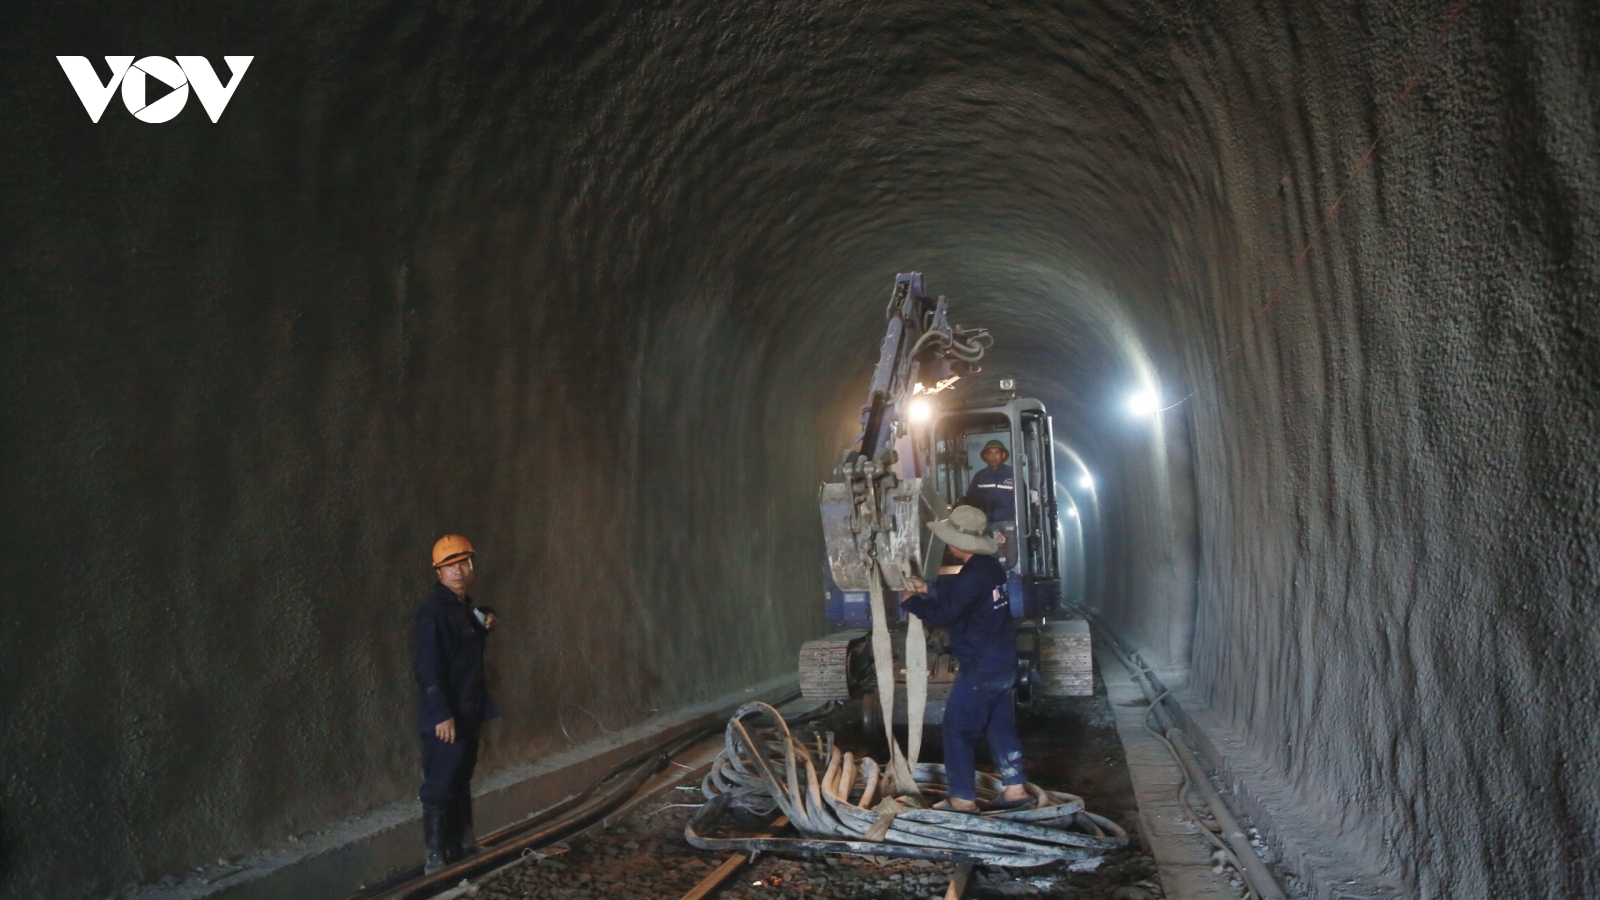 Huy động nhiều chuyên gia, thiết bị khắc phục sạt lở hầm đường sắt Chí Thạnh